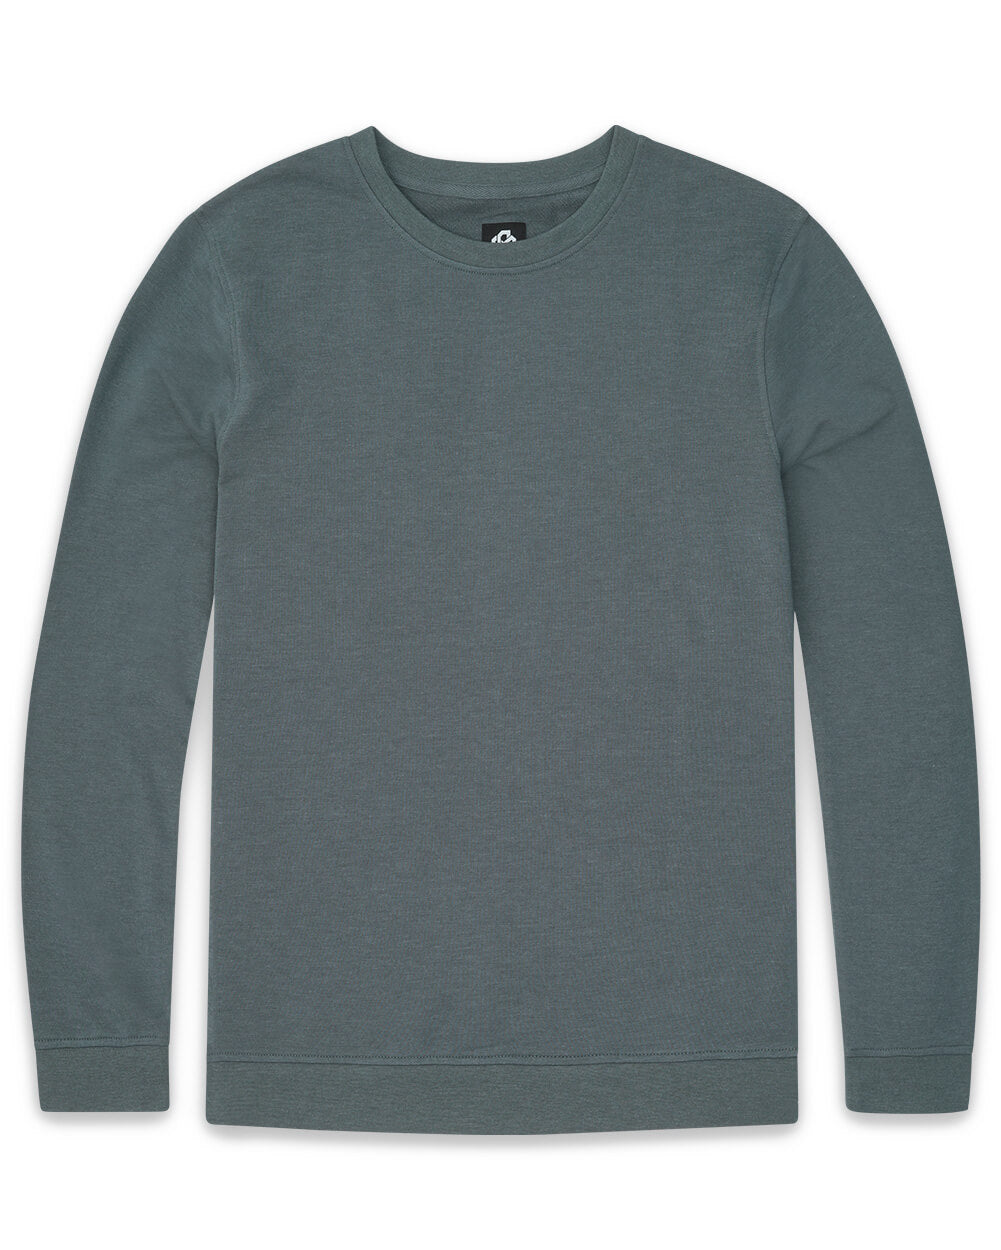 Crewneck Sweatshirt - Non-Branded-Indigo-Front